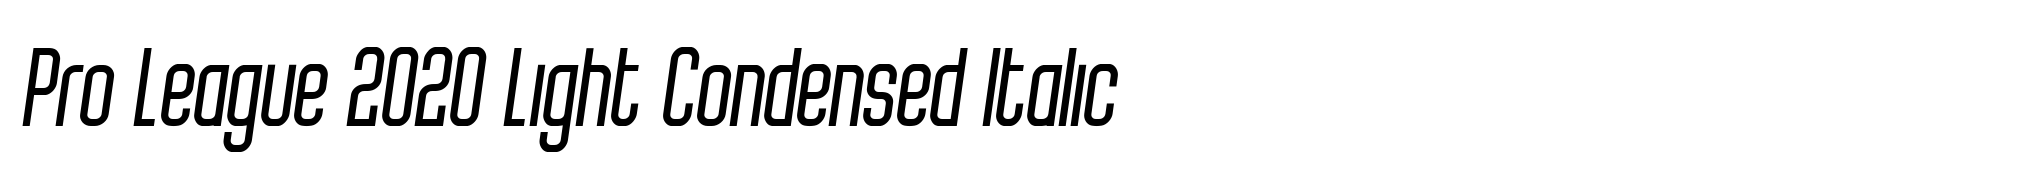 Pro League 2020 Light Condensed Italic image